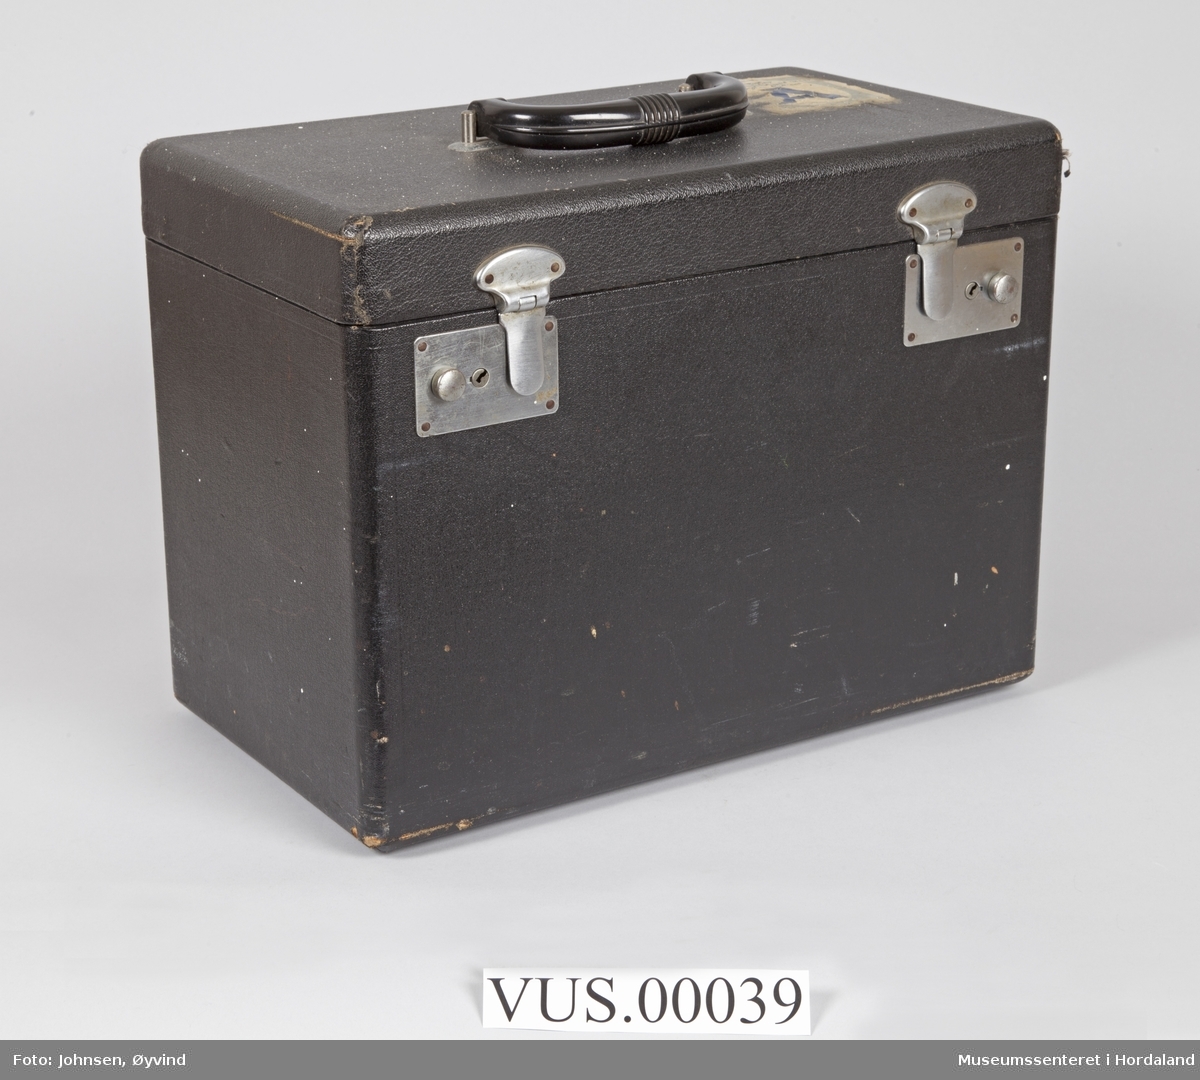 Komplett symaskin med diverse utstyr i svart kasse. I bruksanvisning står Singer Featherweight 221 K Portable Sewing Machine.